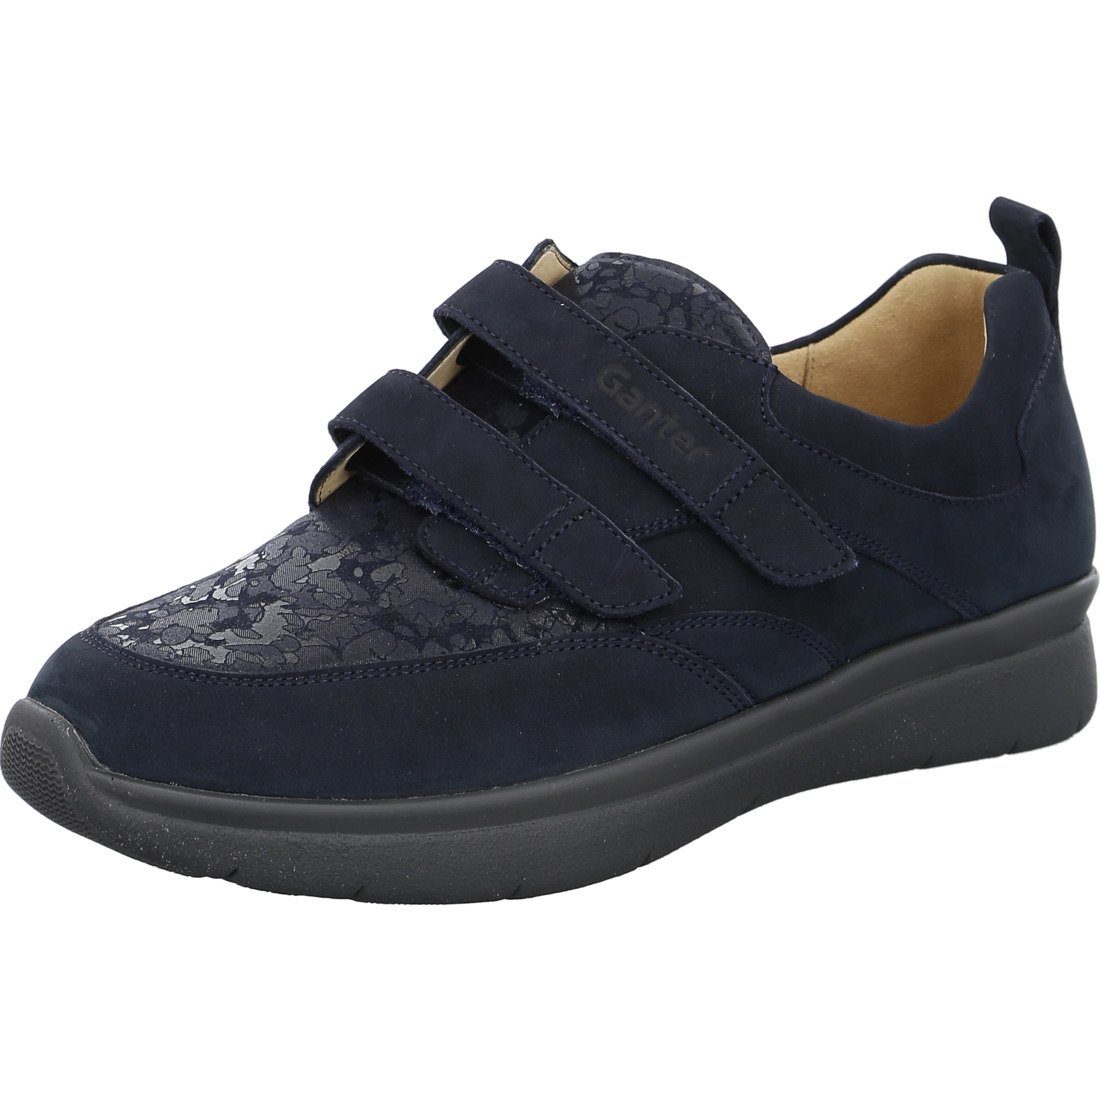 Ganter Ganter Schuhe, Slipper Kira - Leder Damen Slipper blau 050509 | Slipper